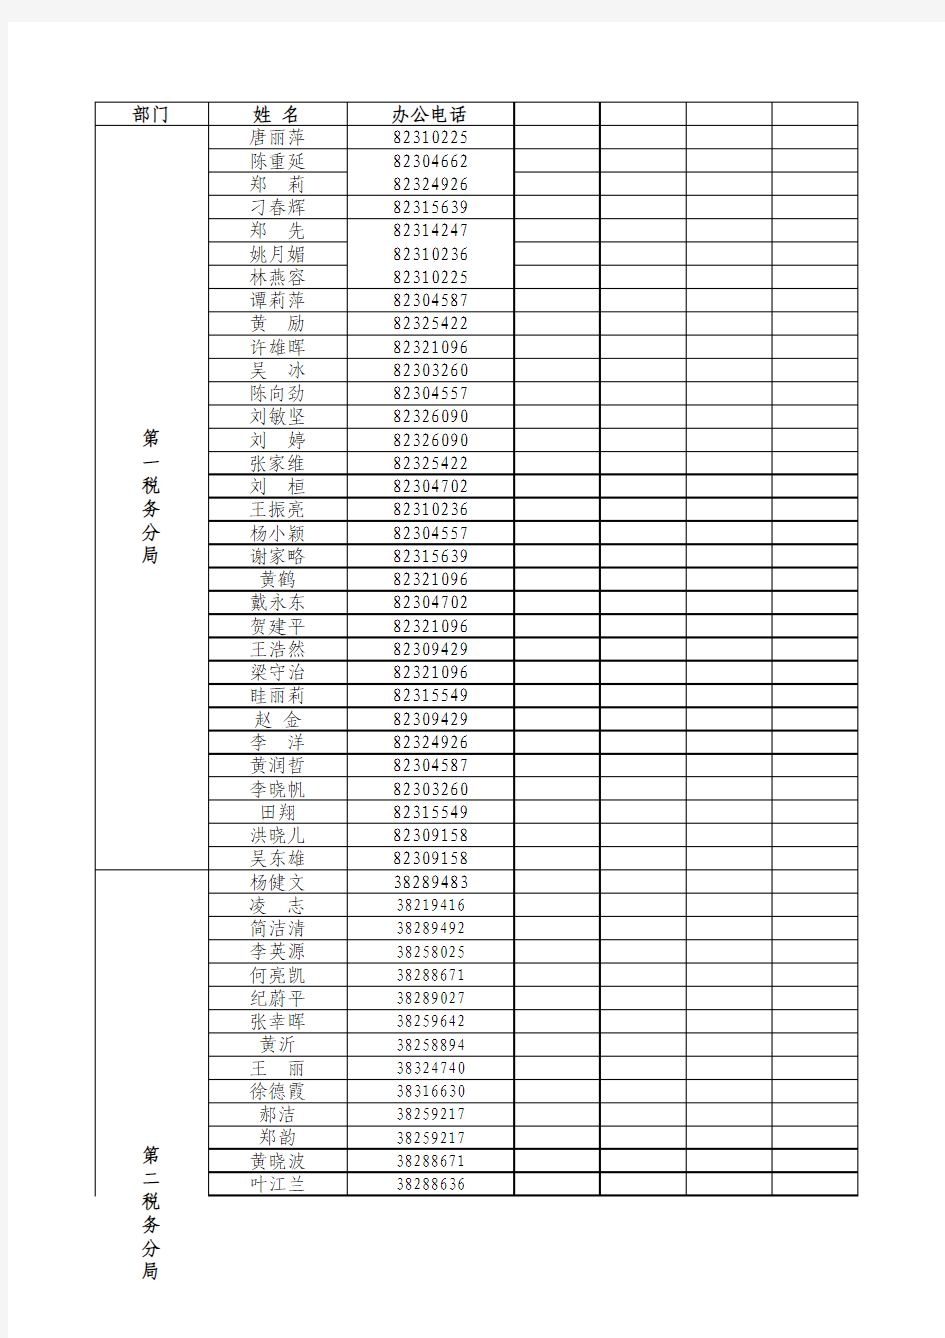 天河国税税收管理员查询清单(截止至2011年8月5日)